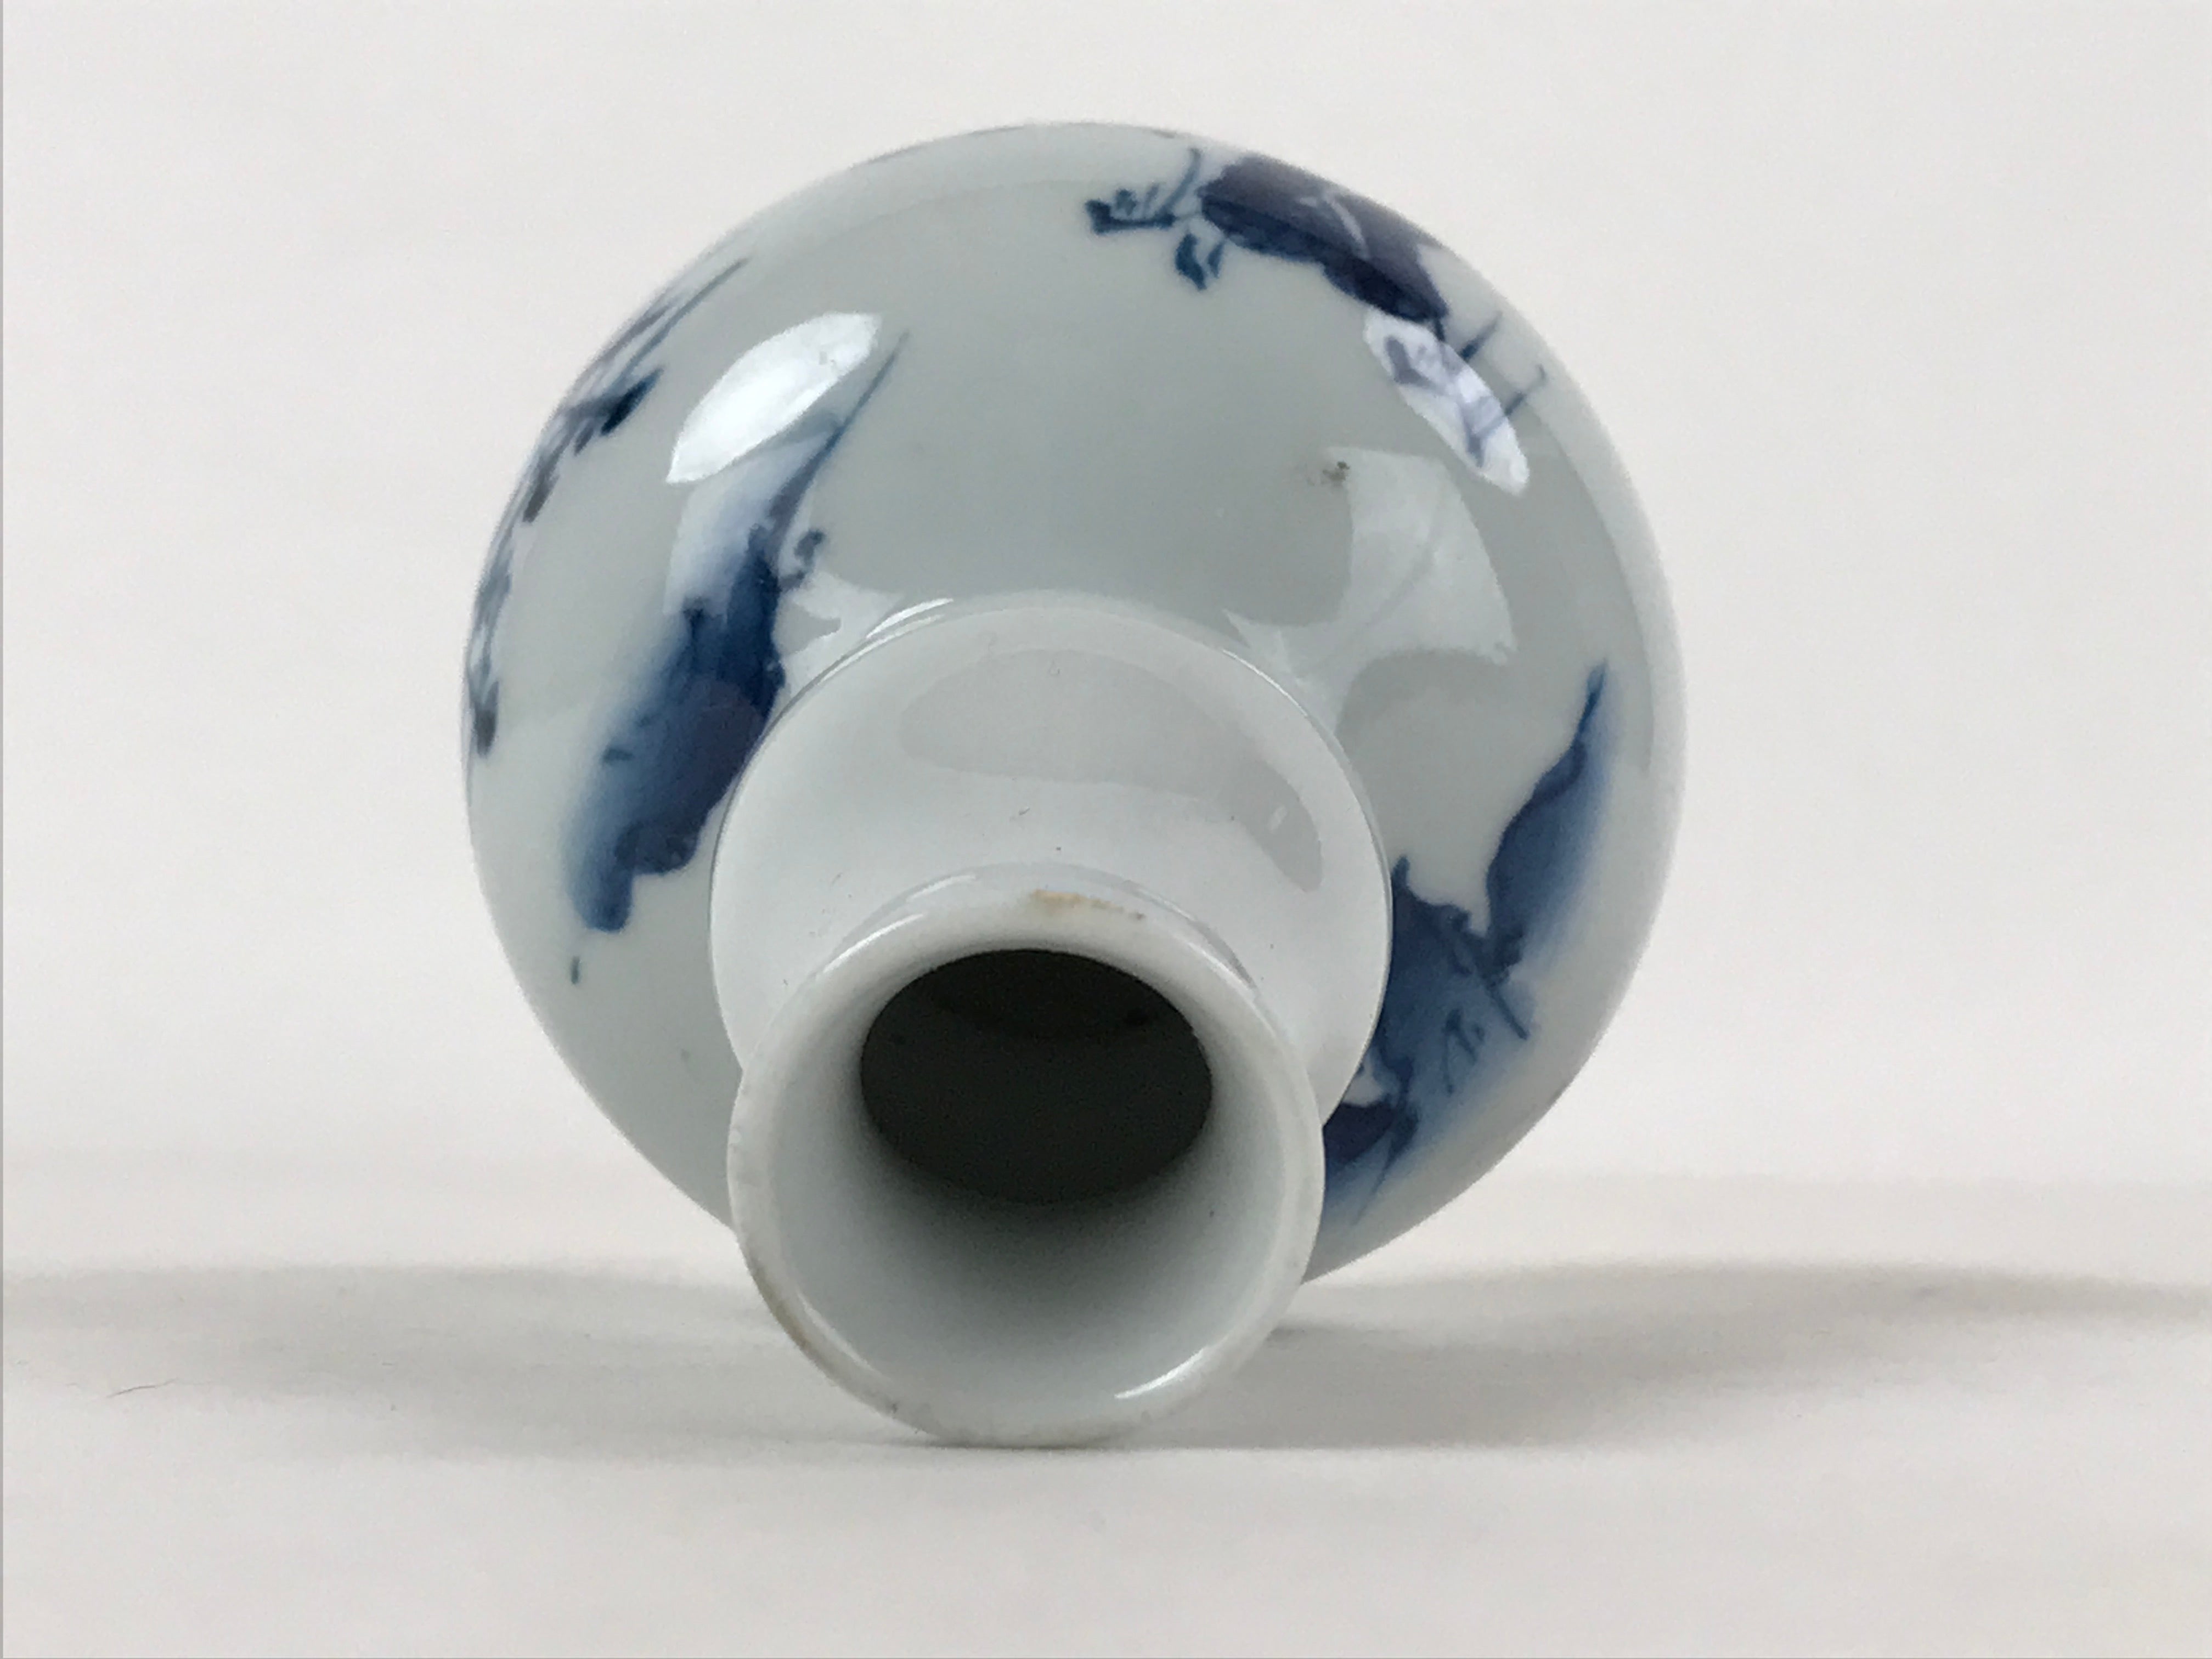 Japanese Sake Bottle Porcelain Tokkuri Vtg Arita Ware White Blue Landscape TS596